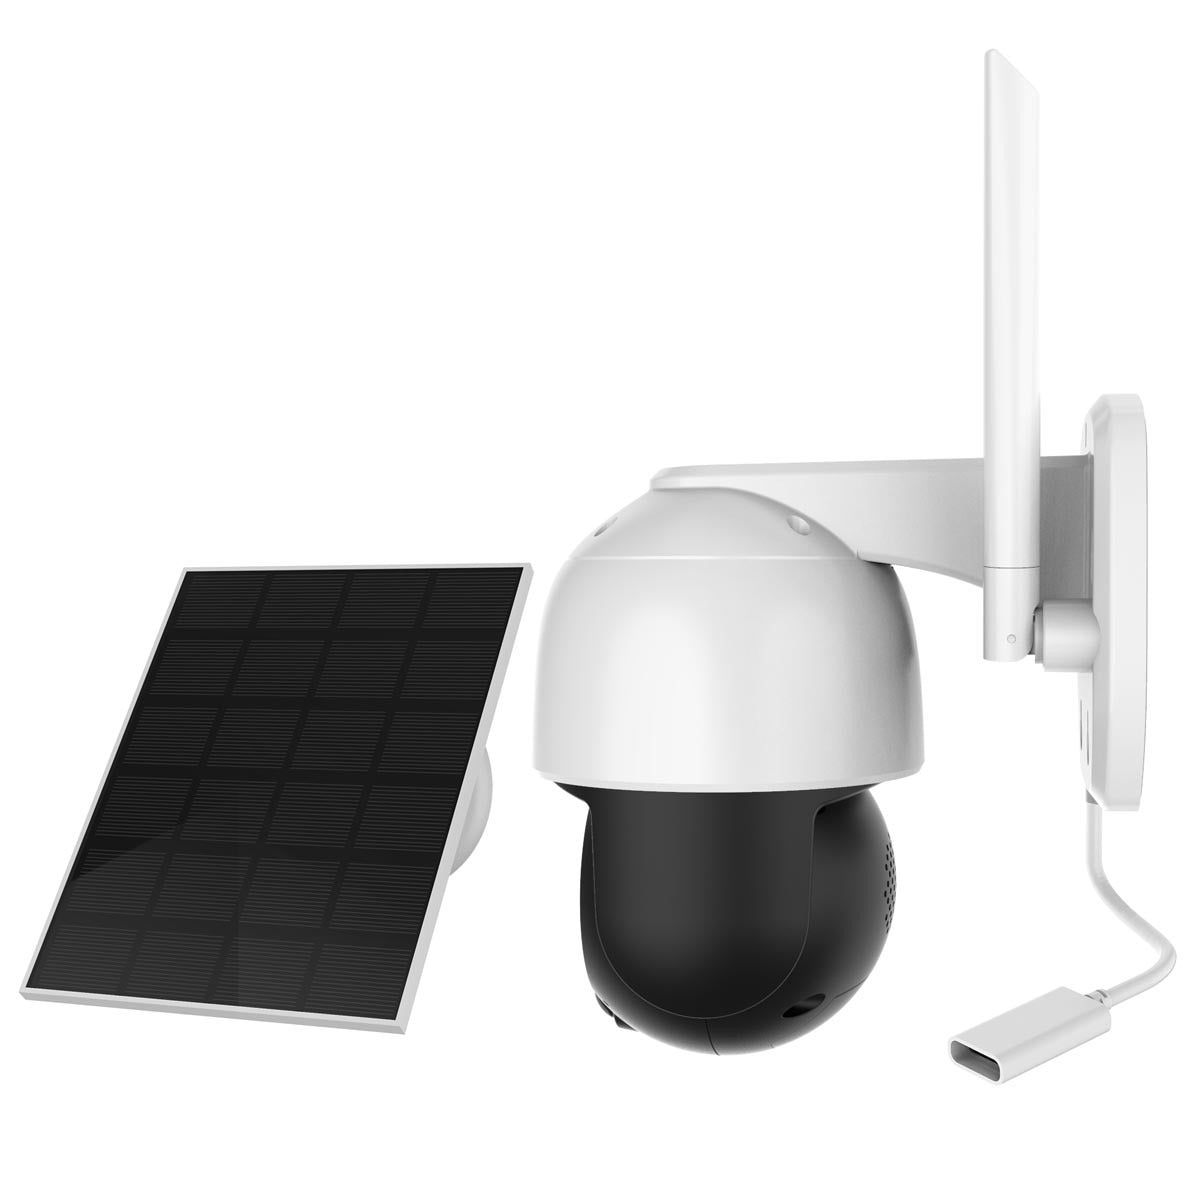 Foscam B4 WLAN Überwachungskamera mit Schwenk- und Neigefunktion, inkl.Solarpanel - Calitronshop.com